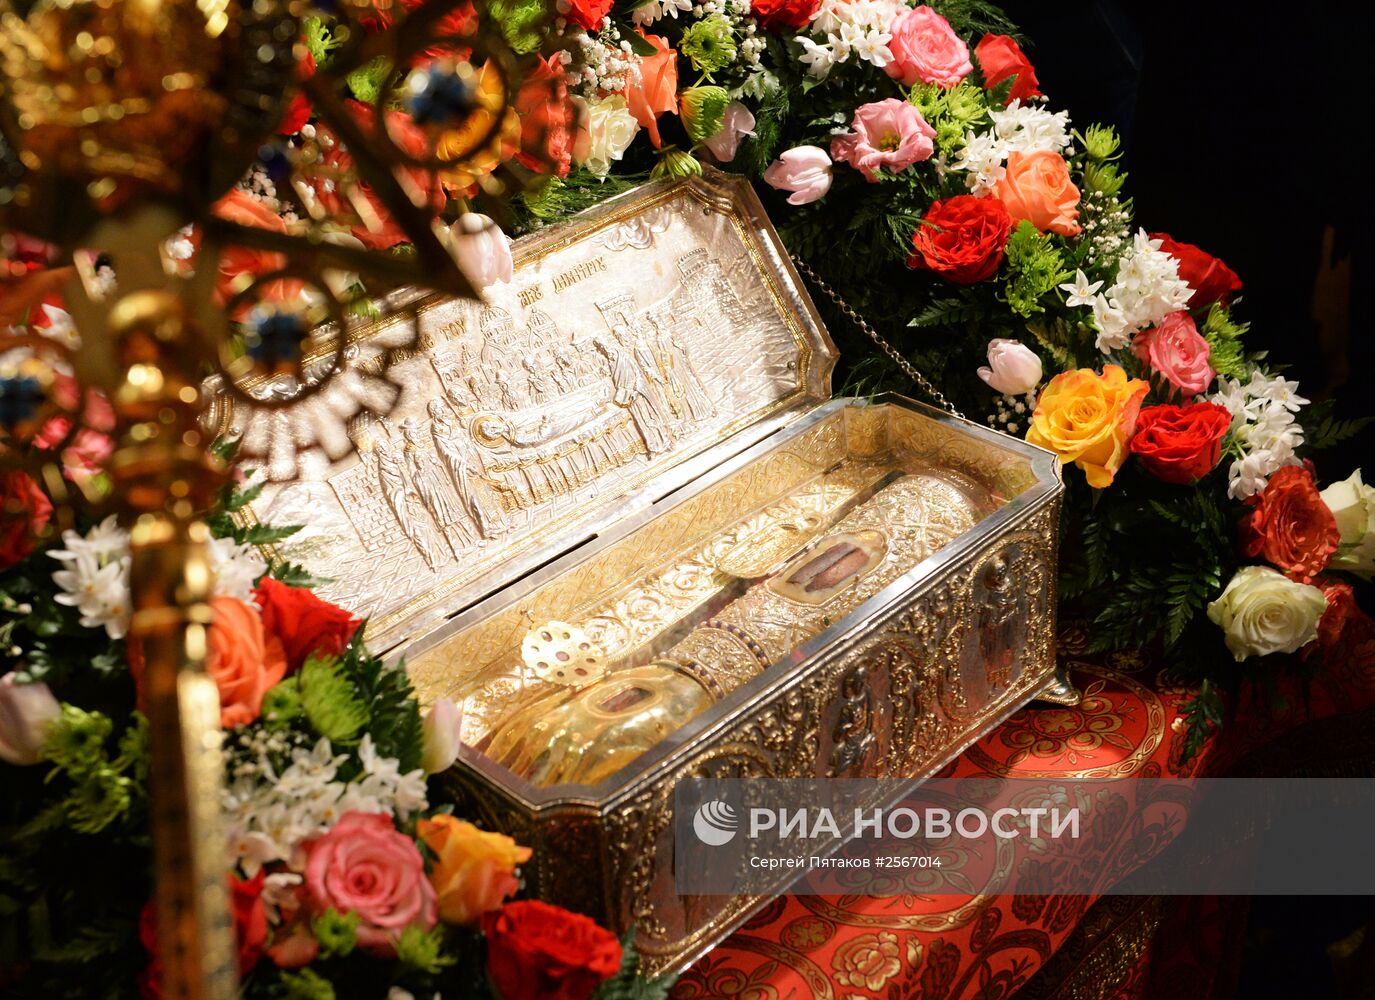 Прибытие мощей святого великомученика Димитрия Солунского